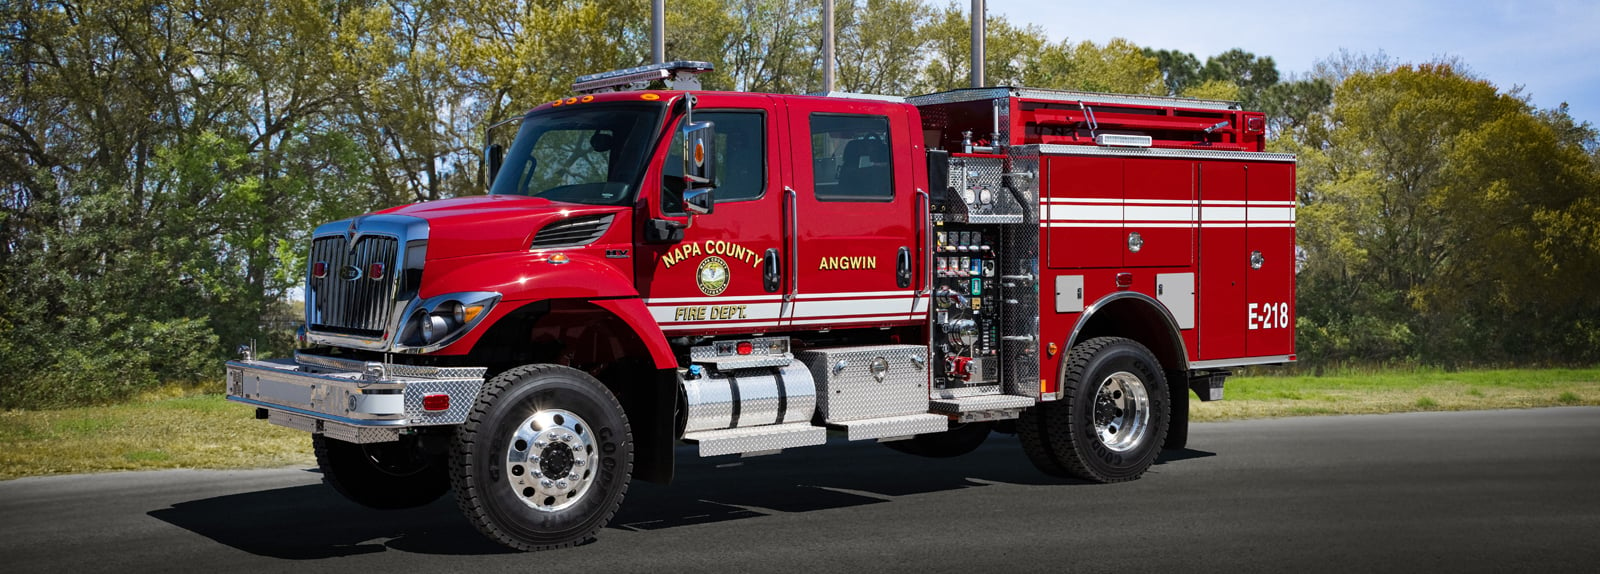 Company Two Fire 4x4 Rescue Trucks